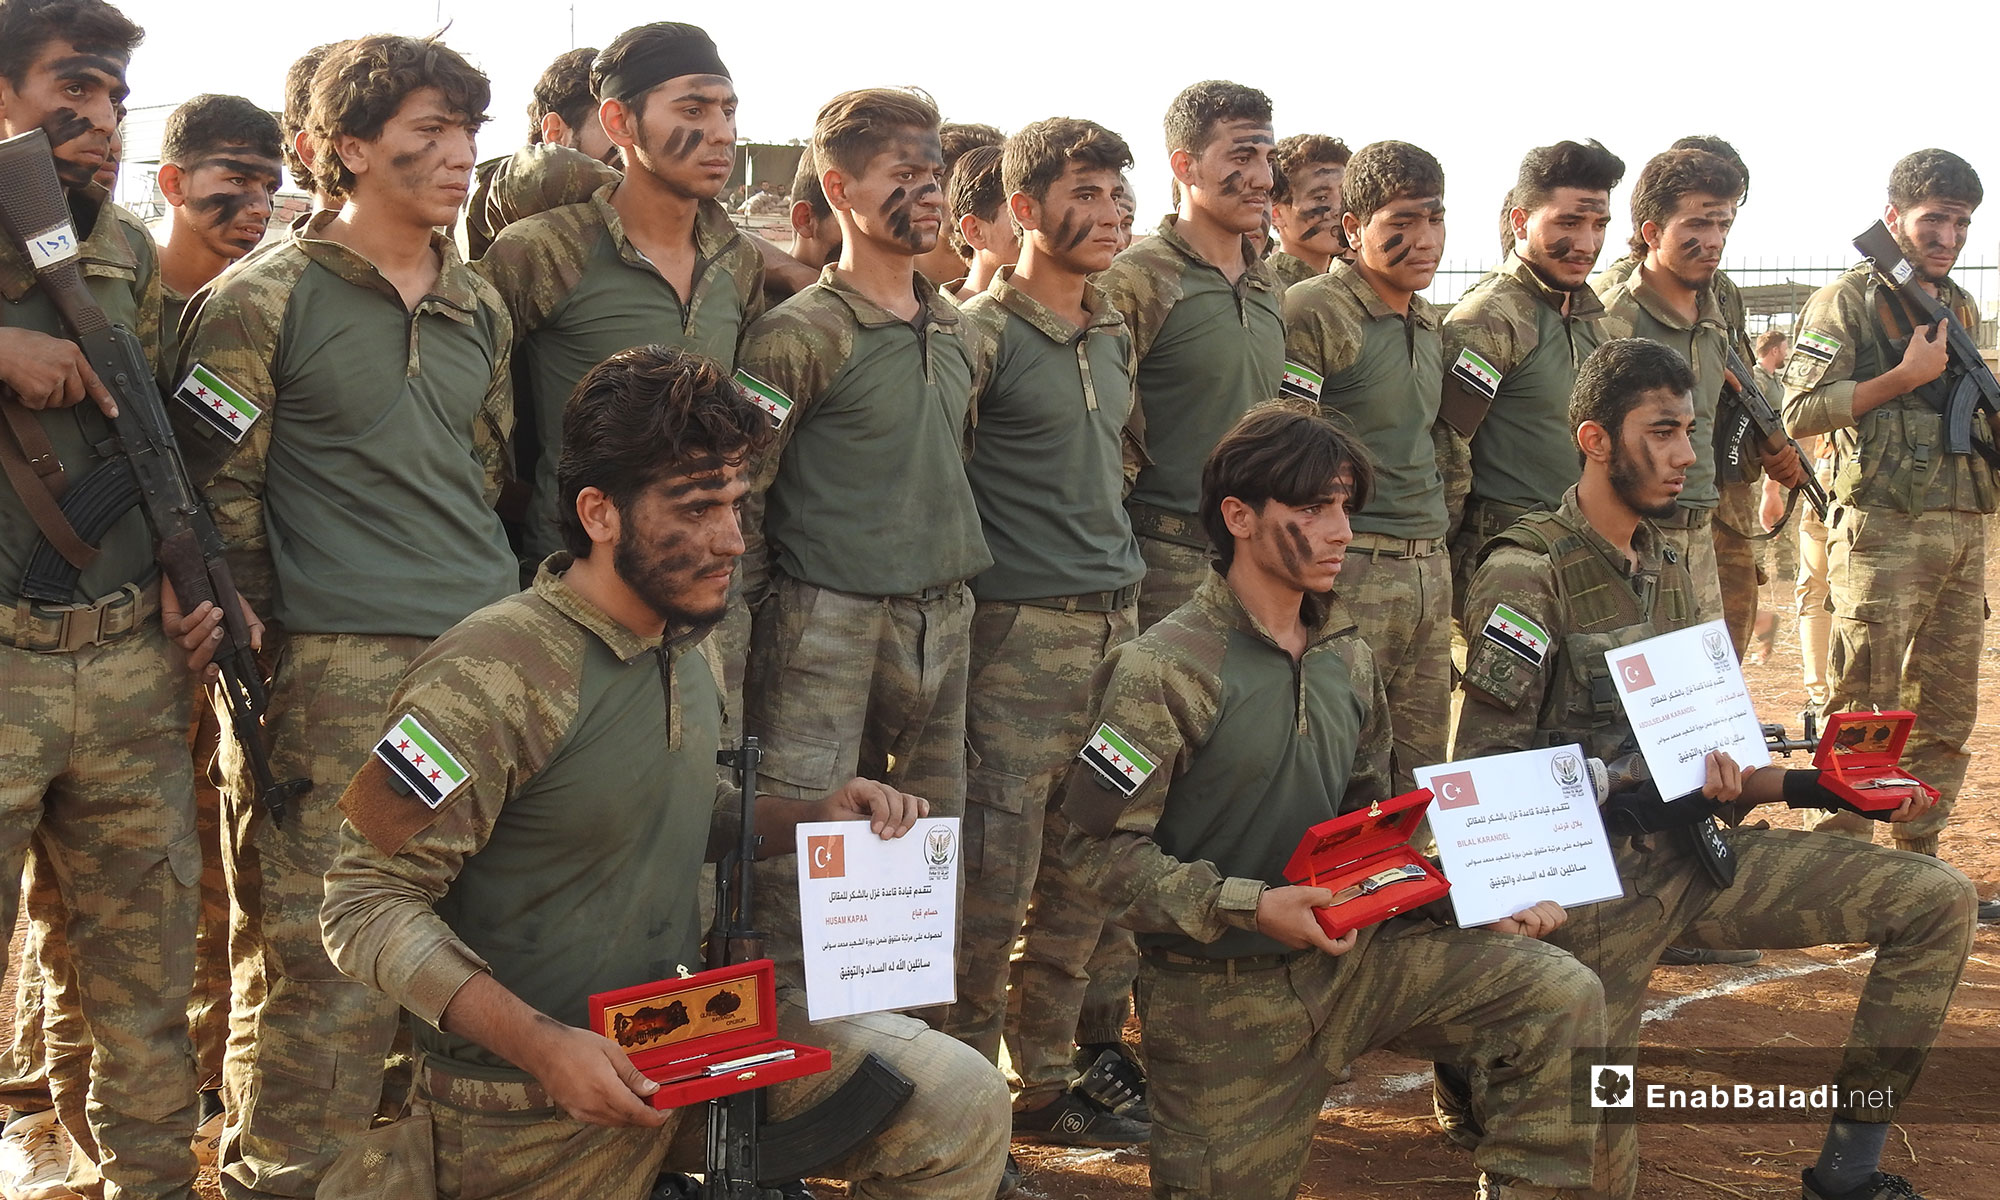 تخريج دورة جديدة من الجيش السوري الوطني في ريف حلب الشمالي - 14 من تشرين الأول 2018 (عنب بلدي)